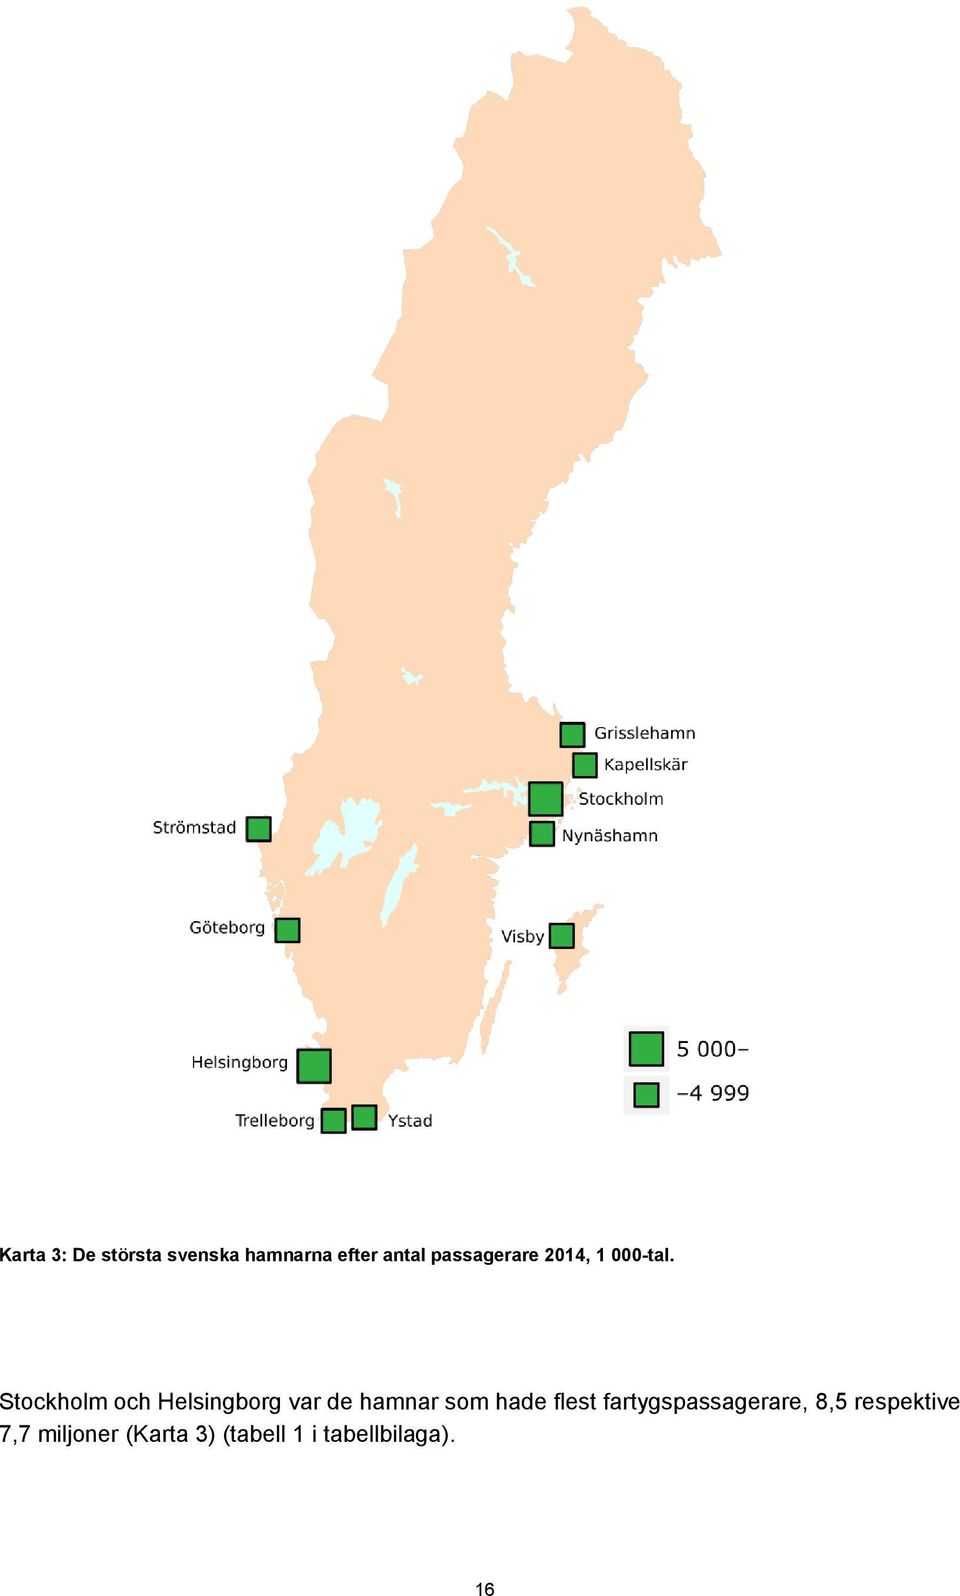 Stockholm och Helsingborg var de hamnar som hade flest